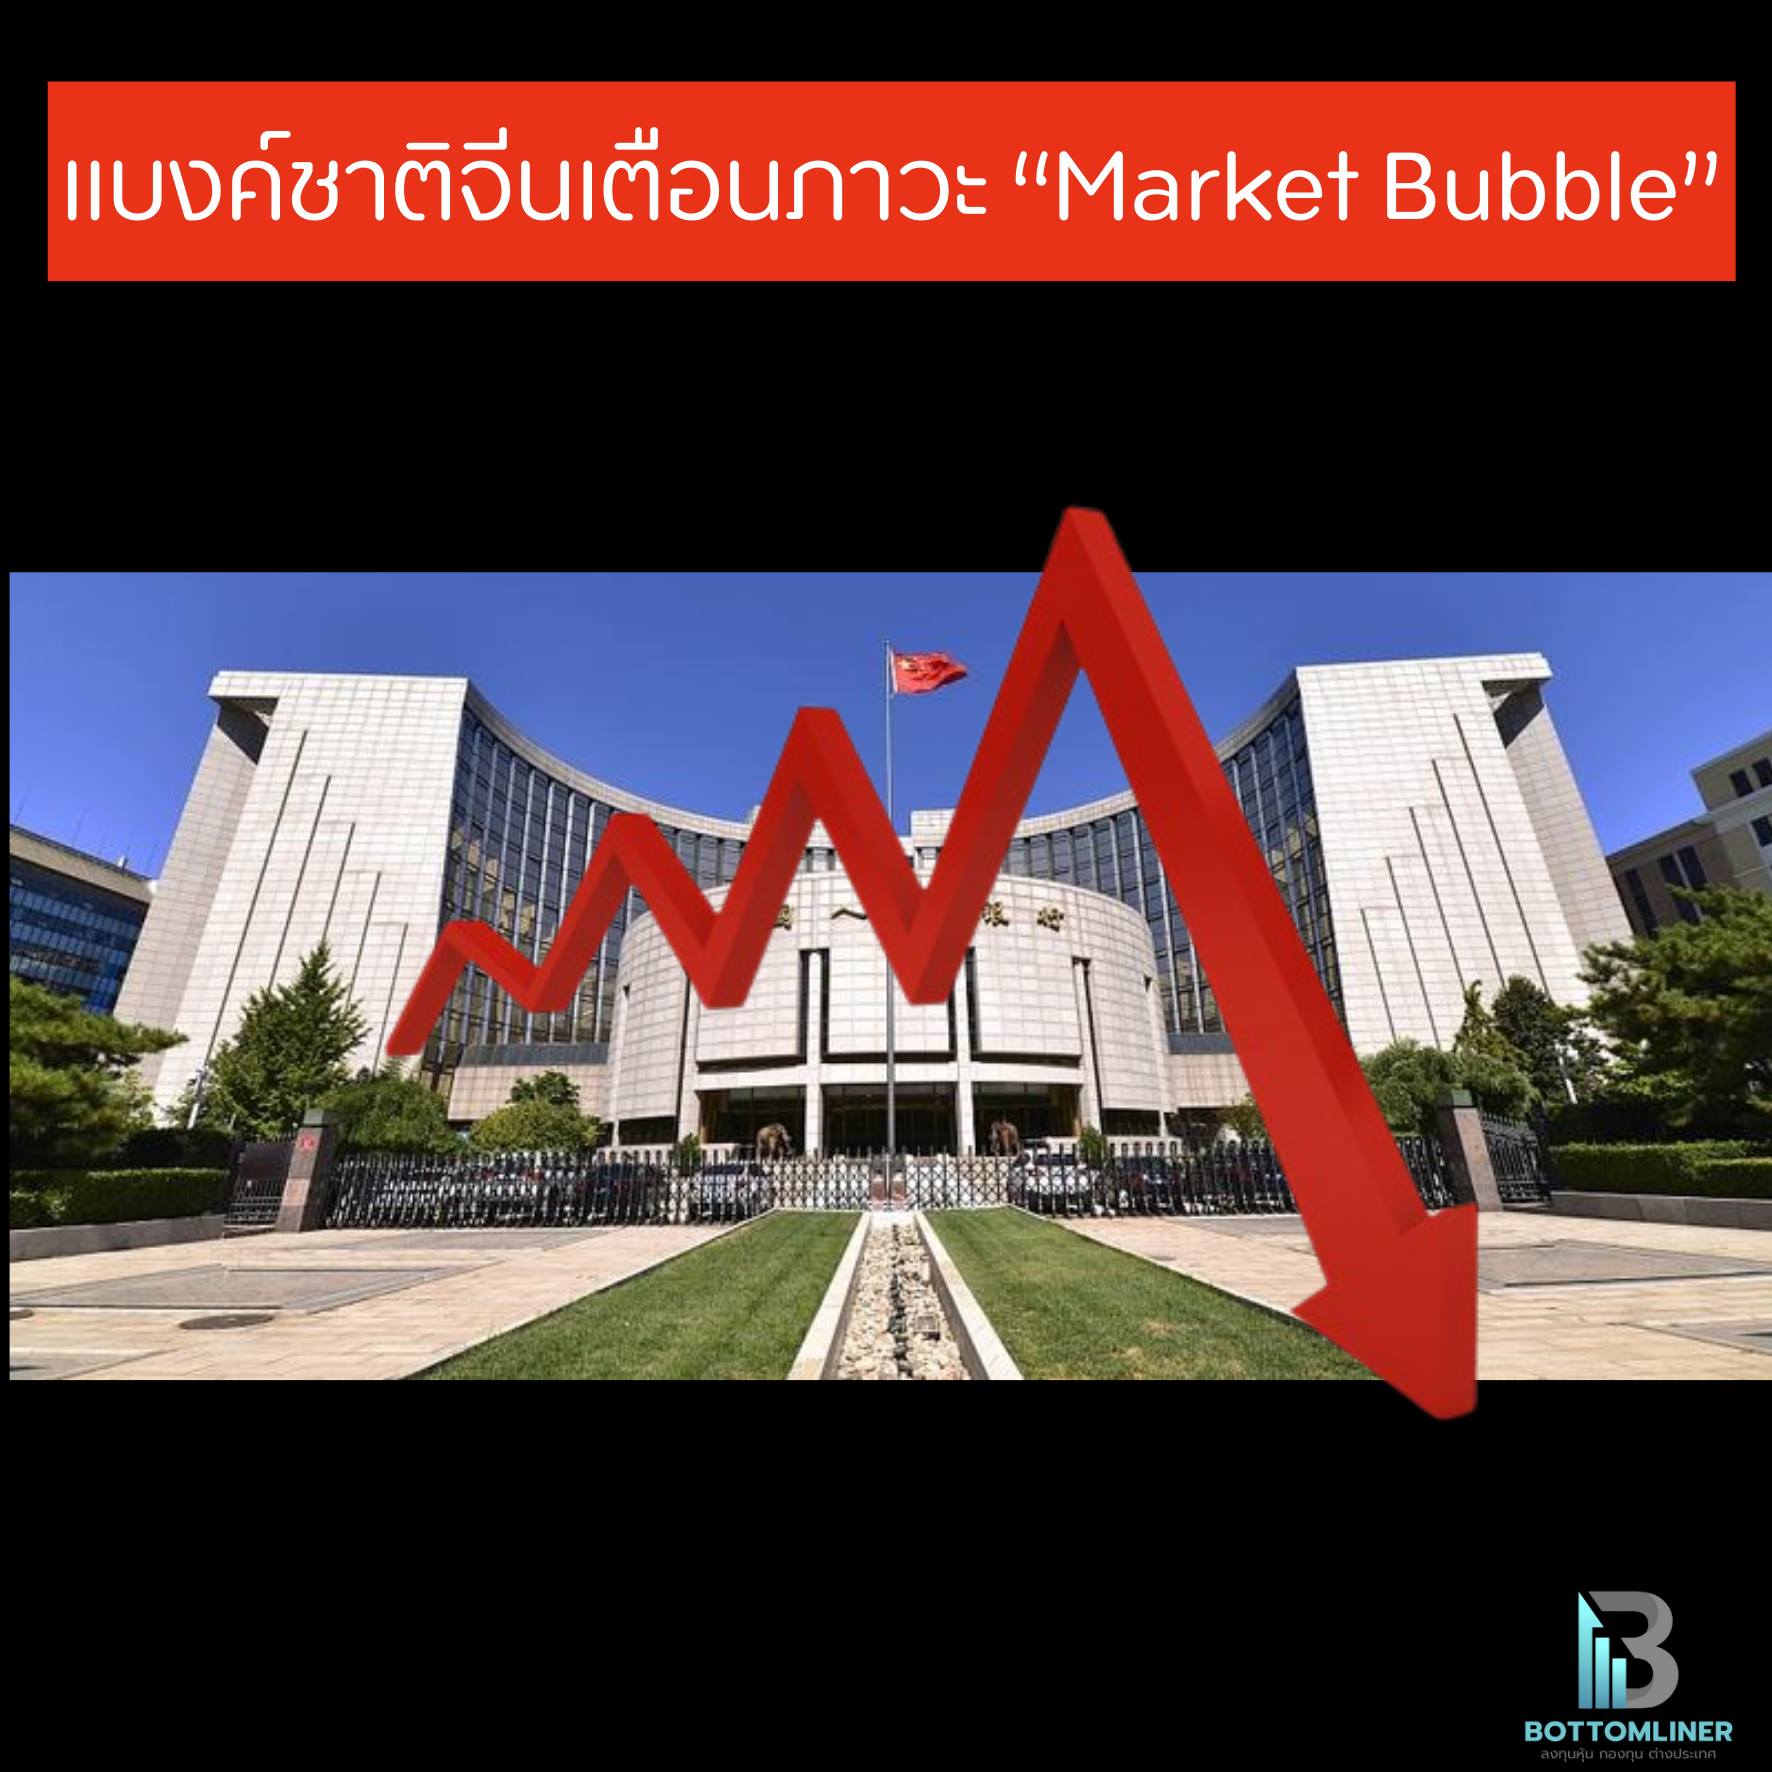 แบงค์ชาติจีนเตือนภาวะ “Market Bubble” ทั่วโลก